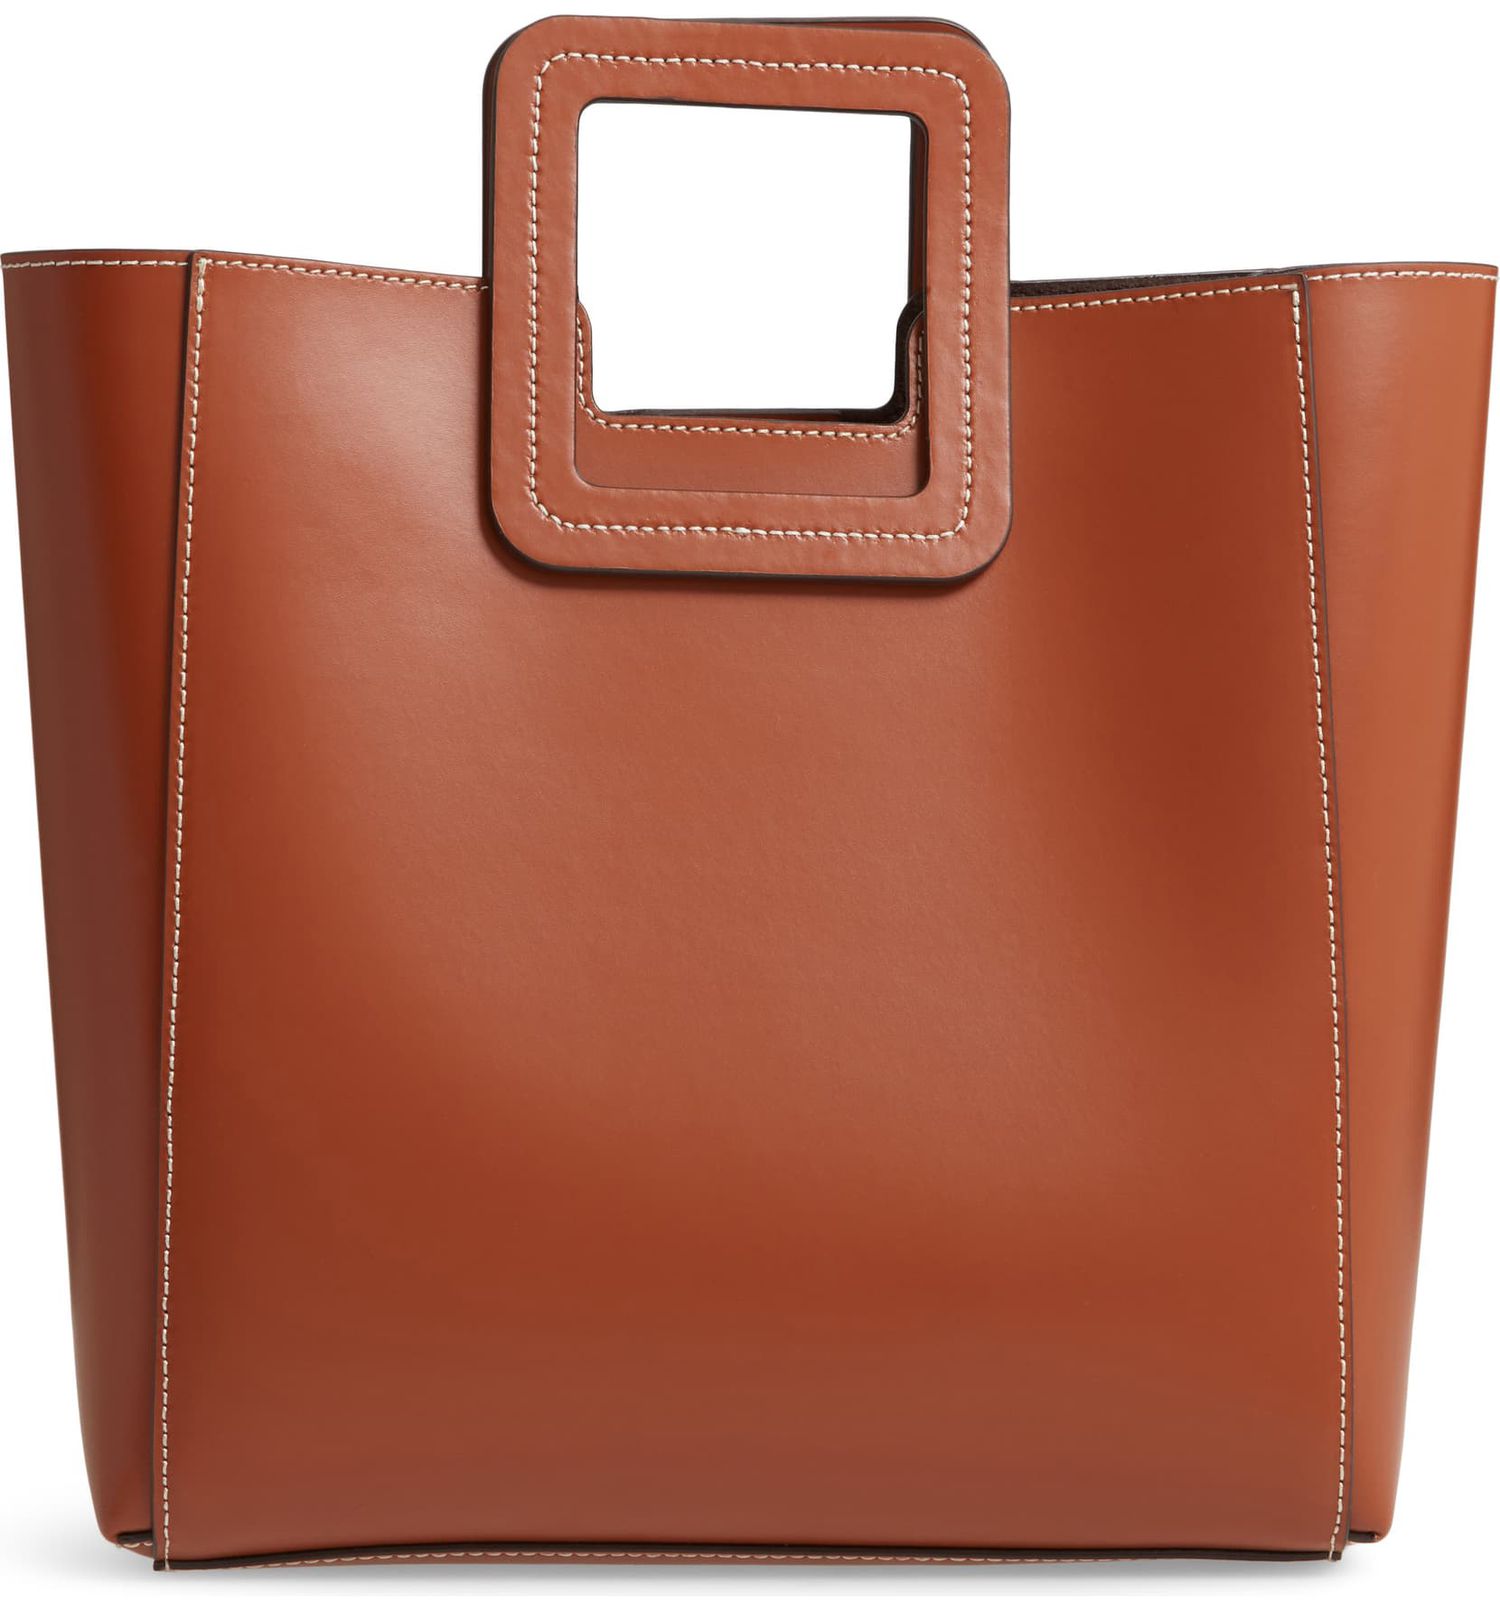 STAUD Shirley Calfskin Leather Handbag, Main, color, TAN Shirley Calfskin Leather Handbag STAUD